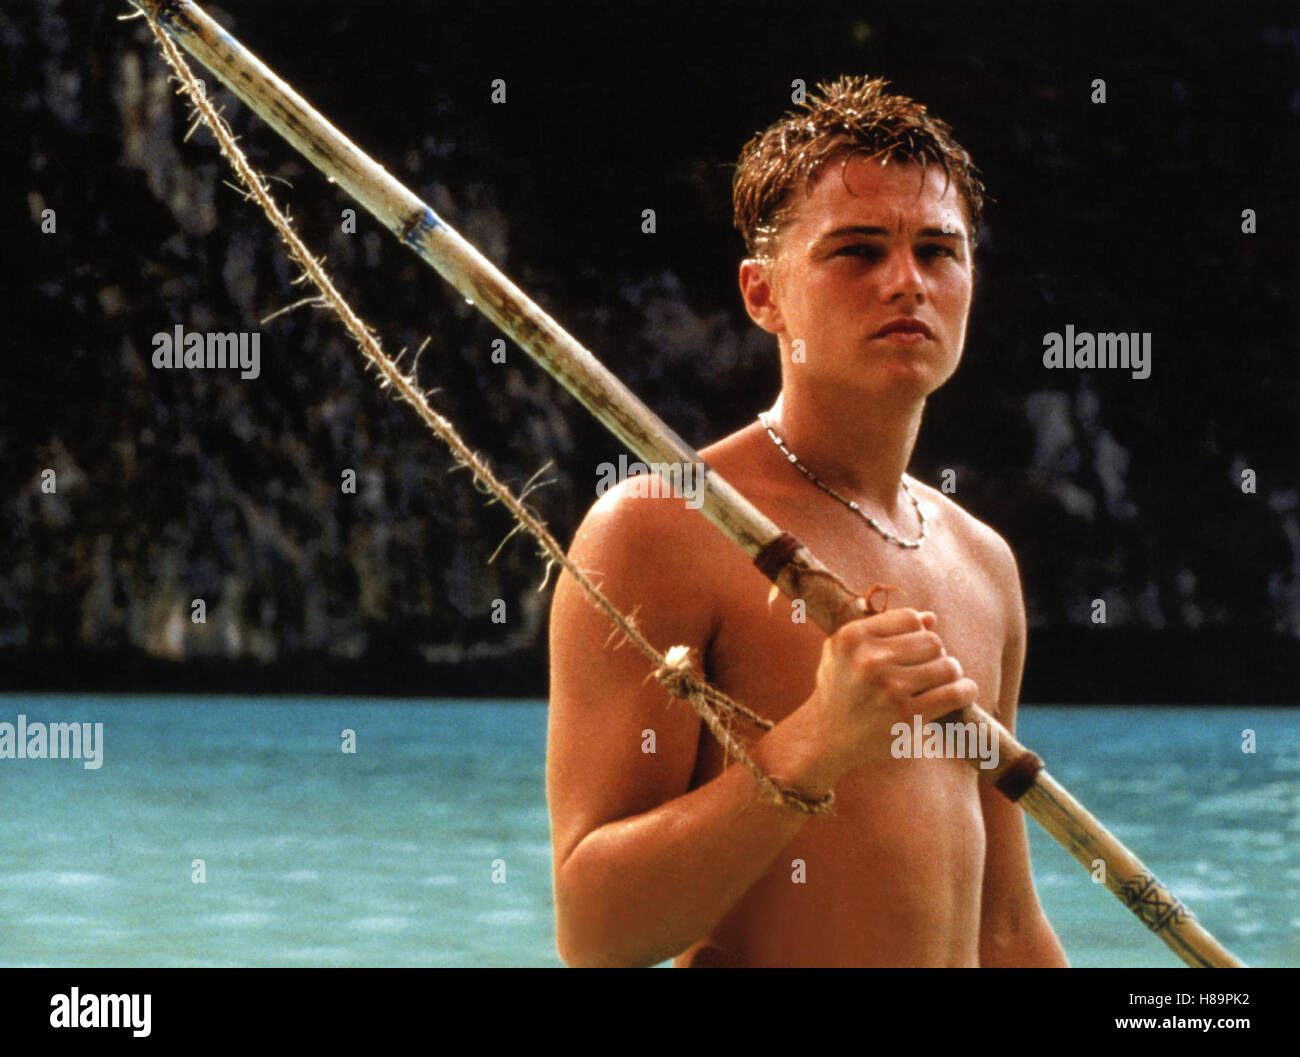 La spiaggia, (spiaggia) USA 2000, Regie: Danny Boyle, Leonardo Di Caprio, Stichwort: Meer Foto Stock